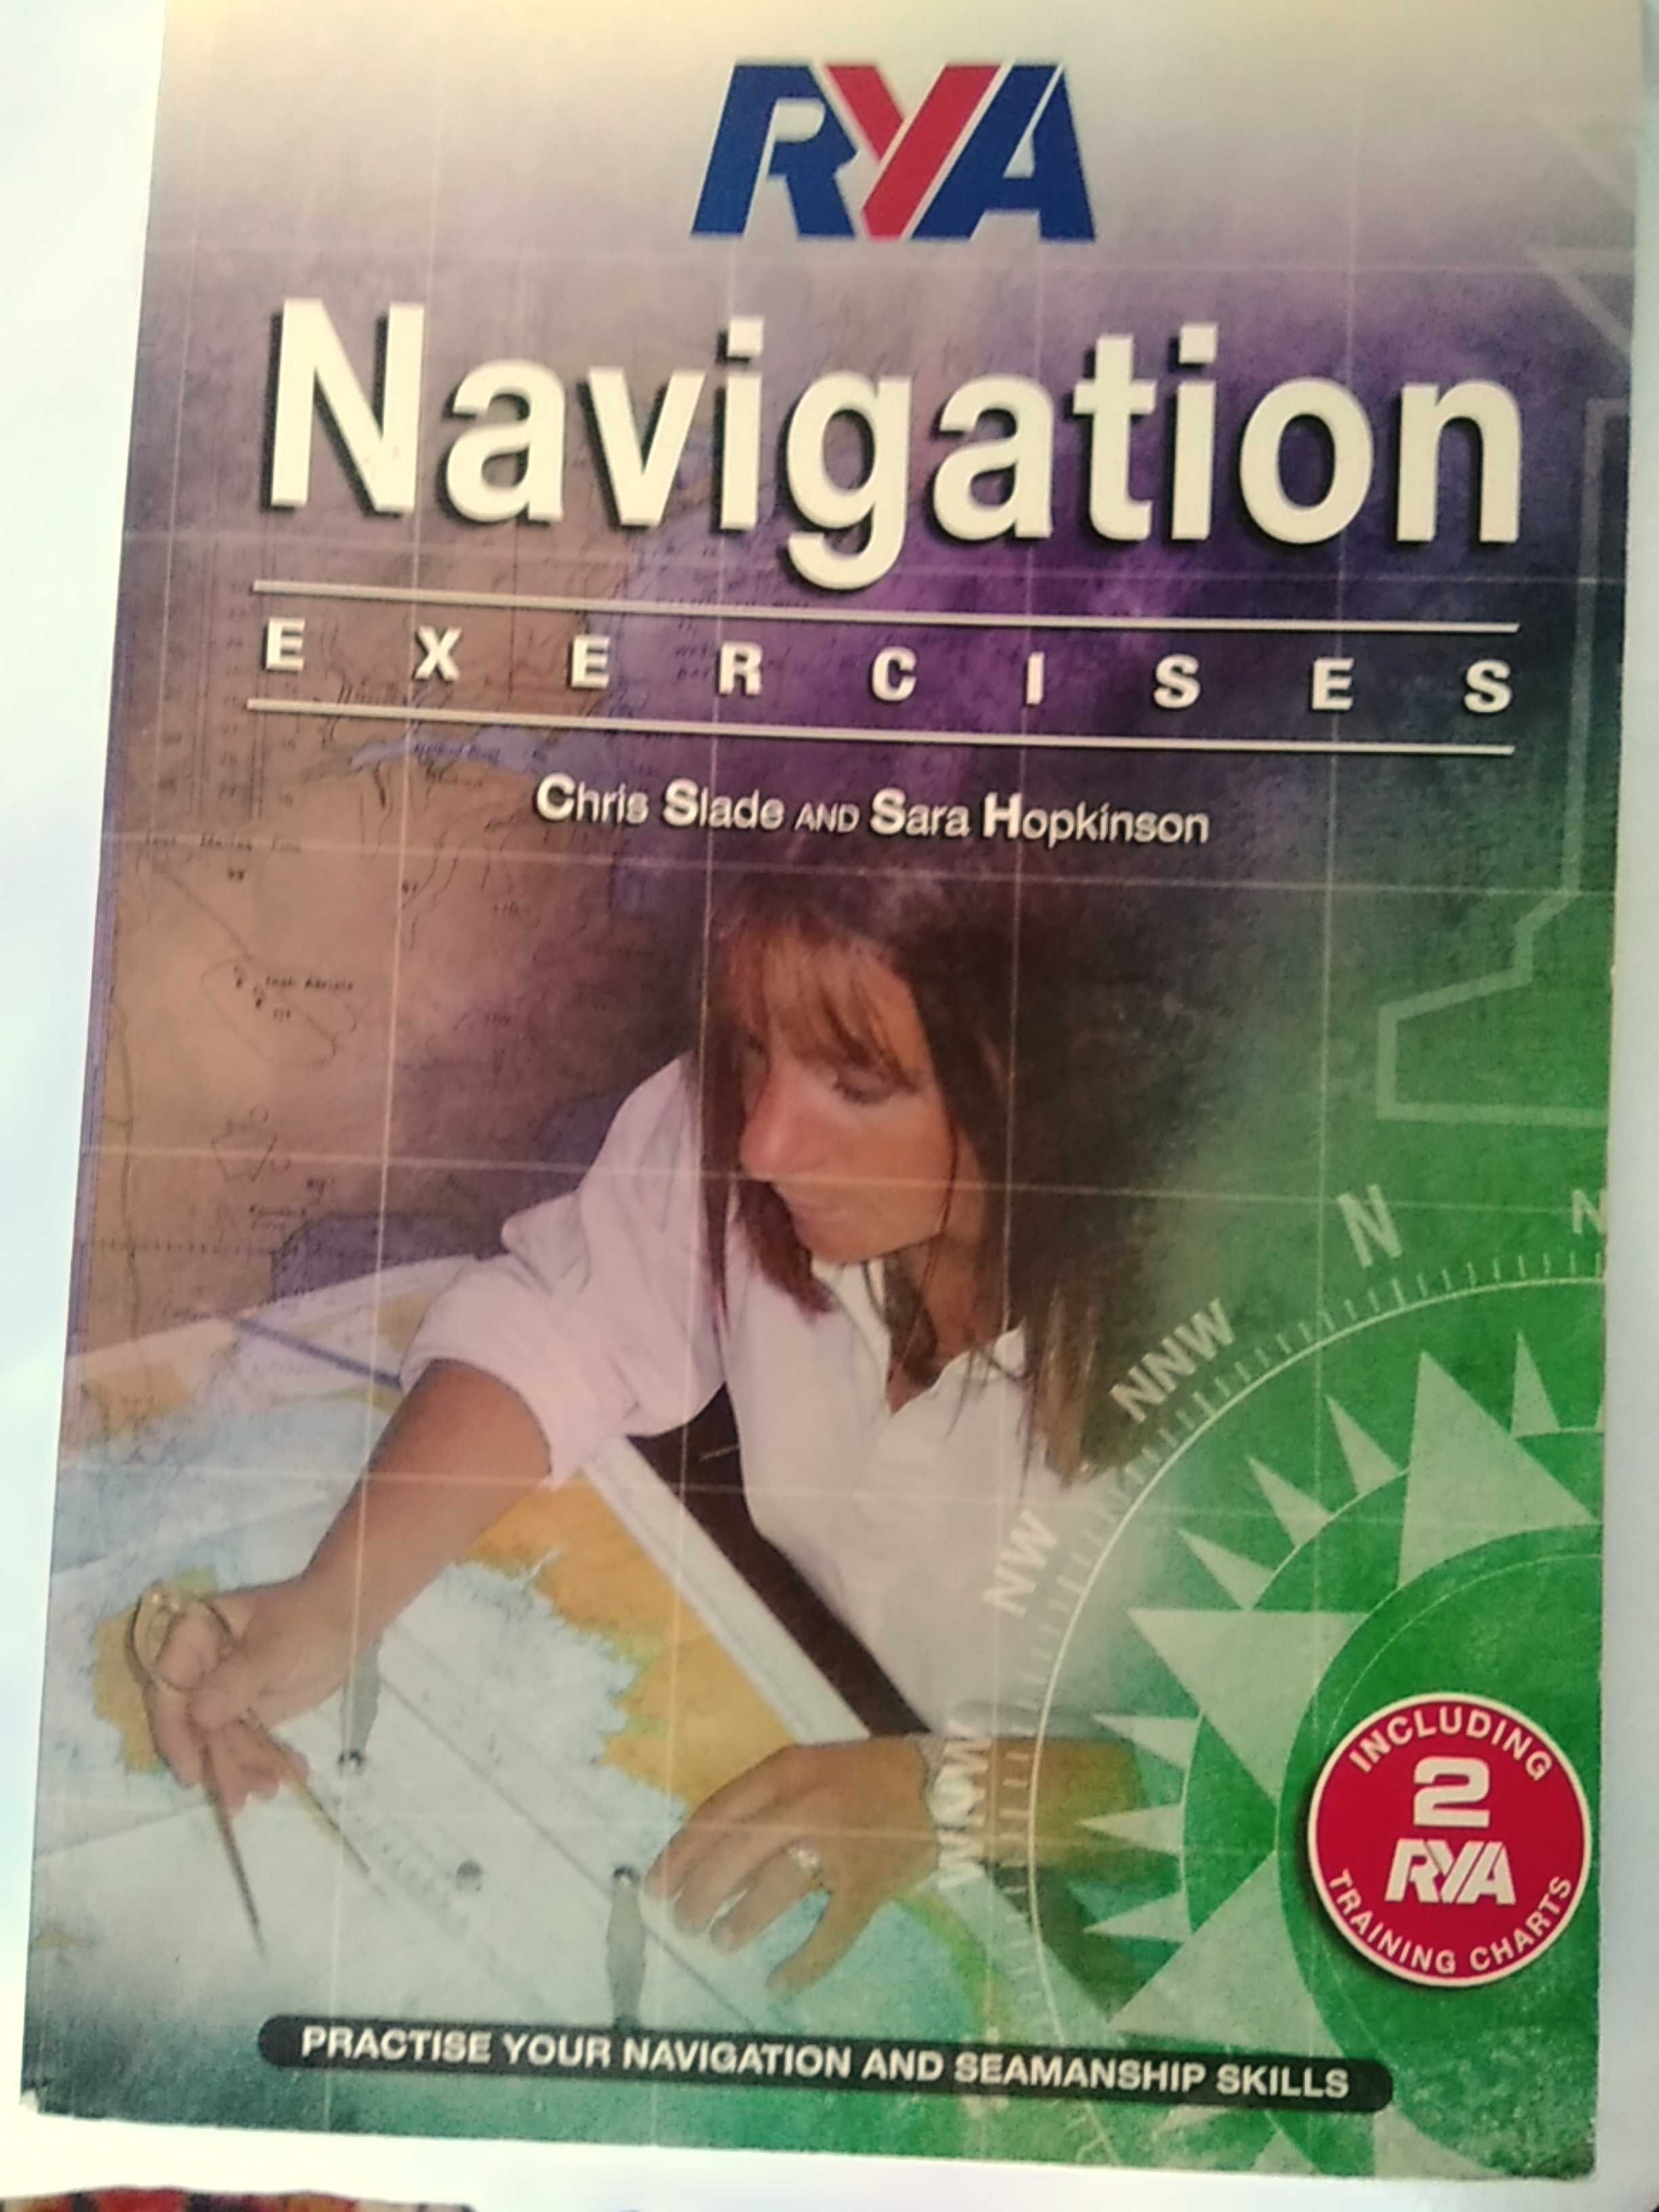 Manual pentru exercitii de navigatie,plotting,etc.